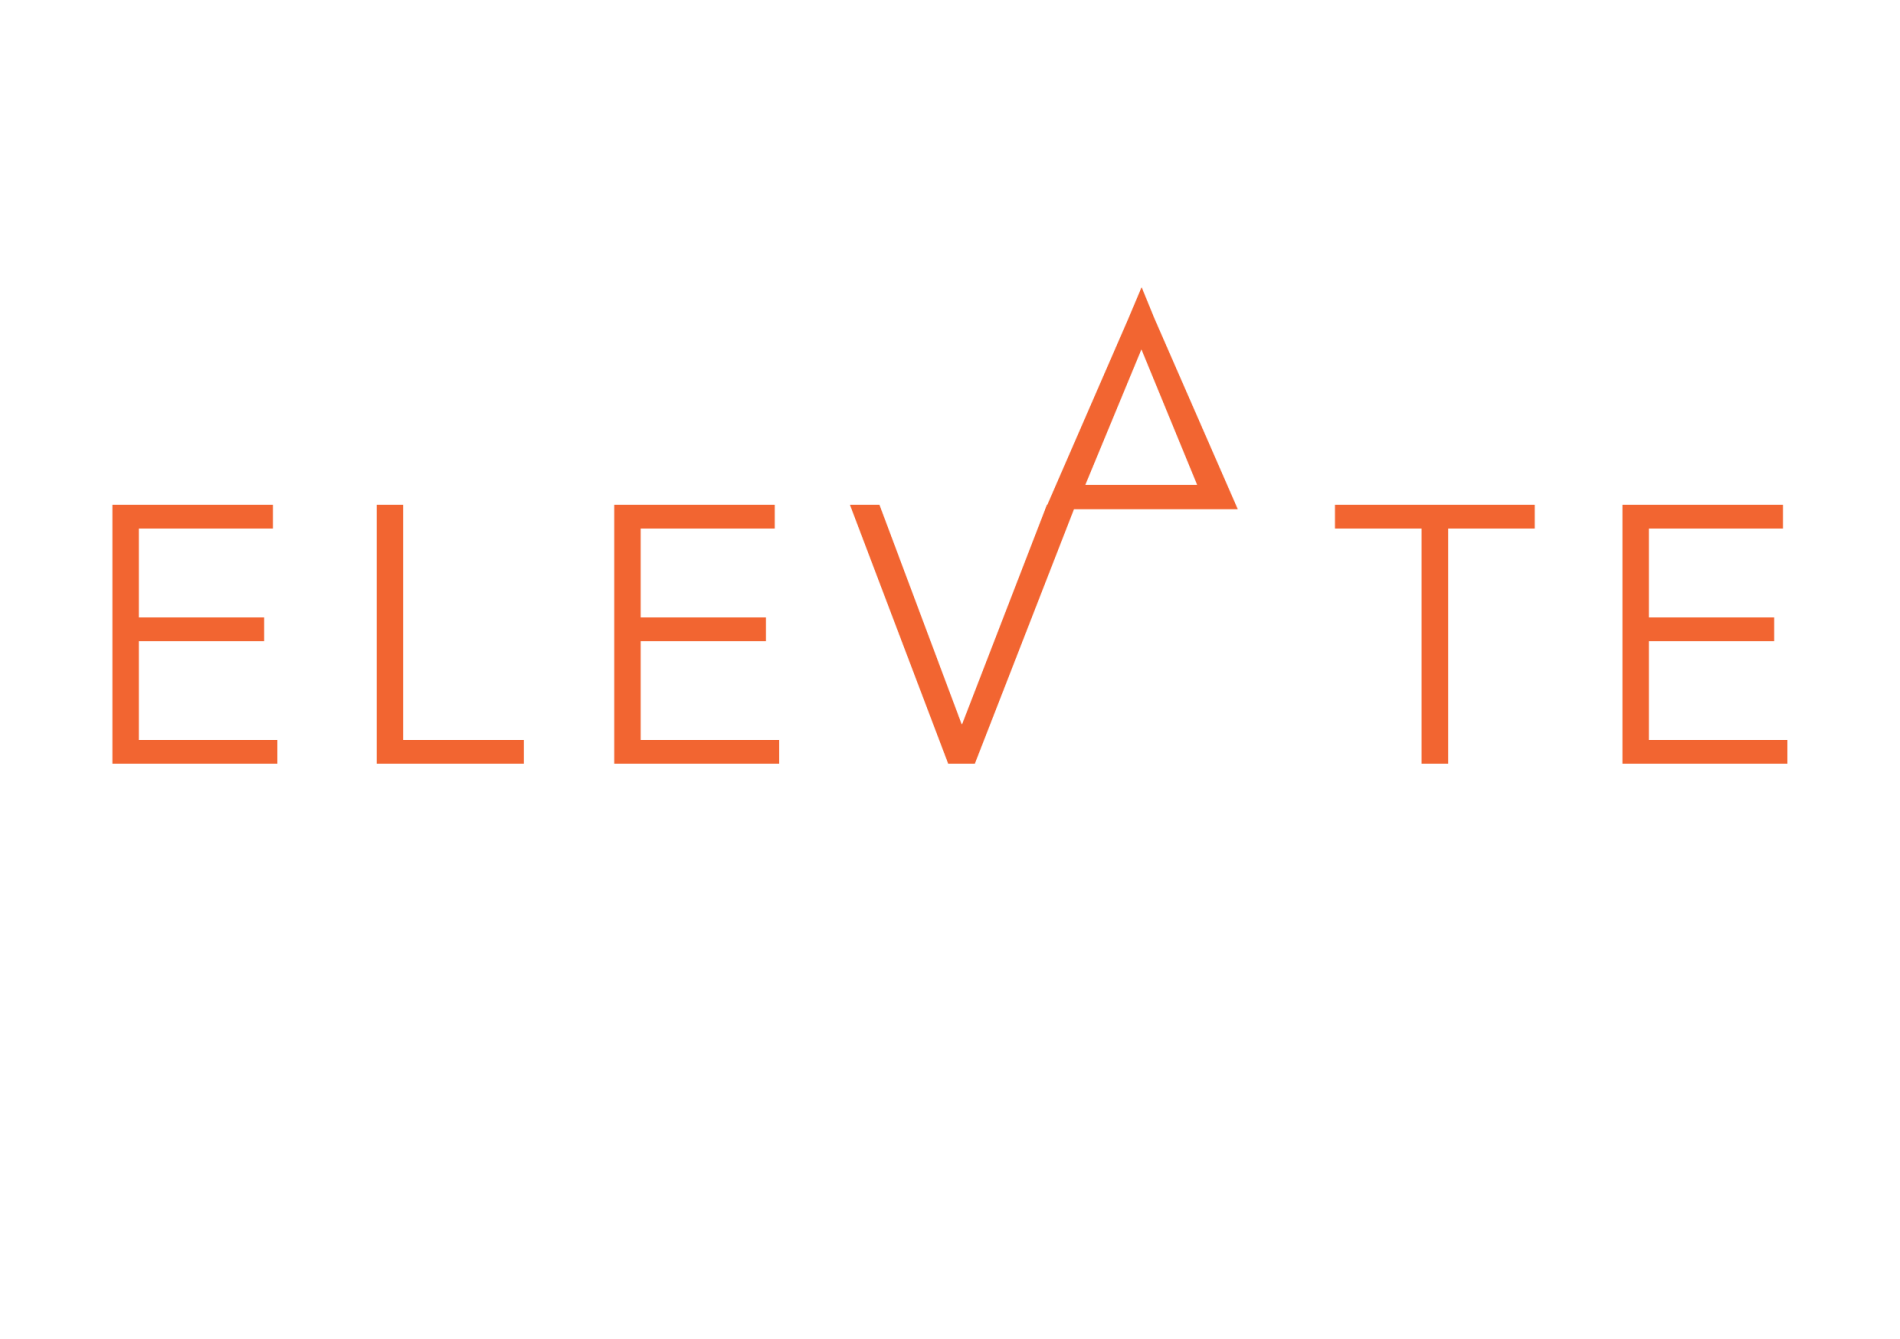 Elevate Corporate Training logo transparent